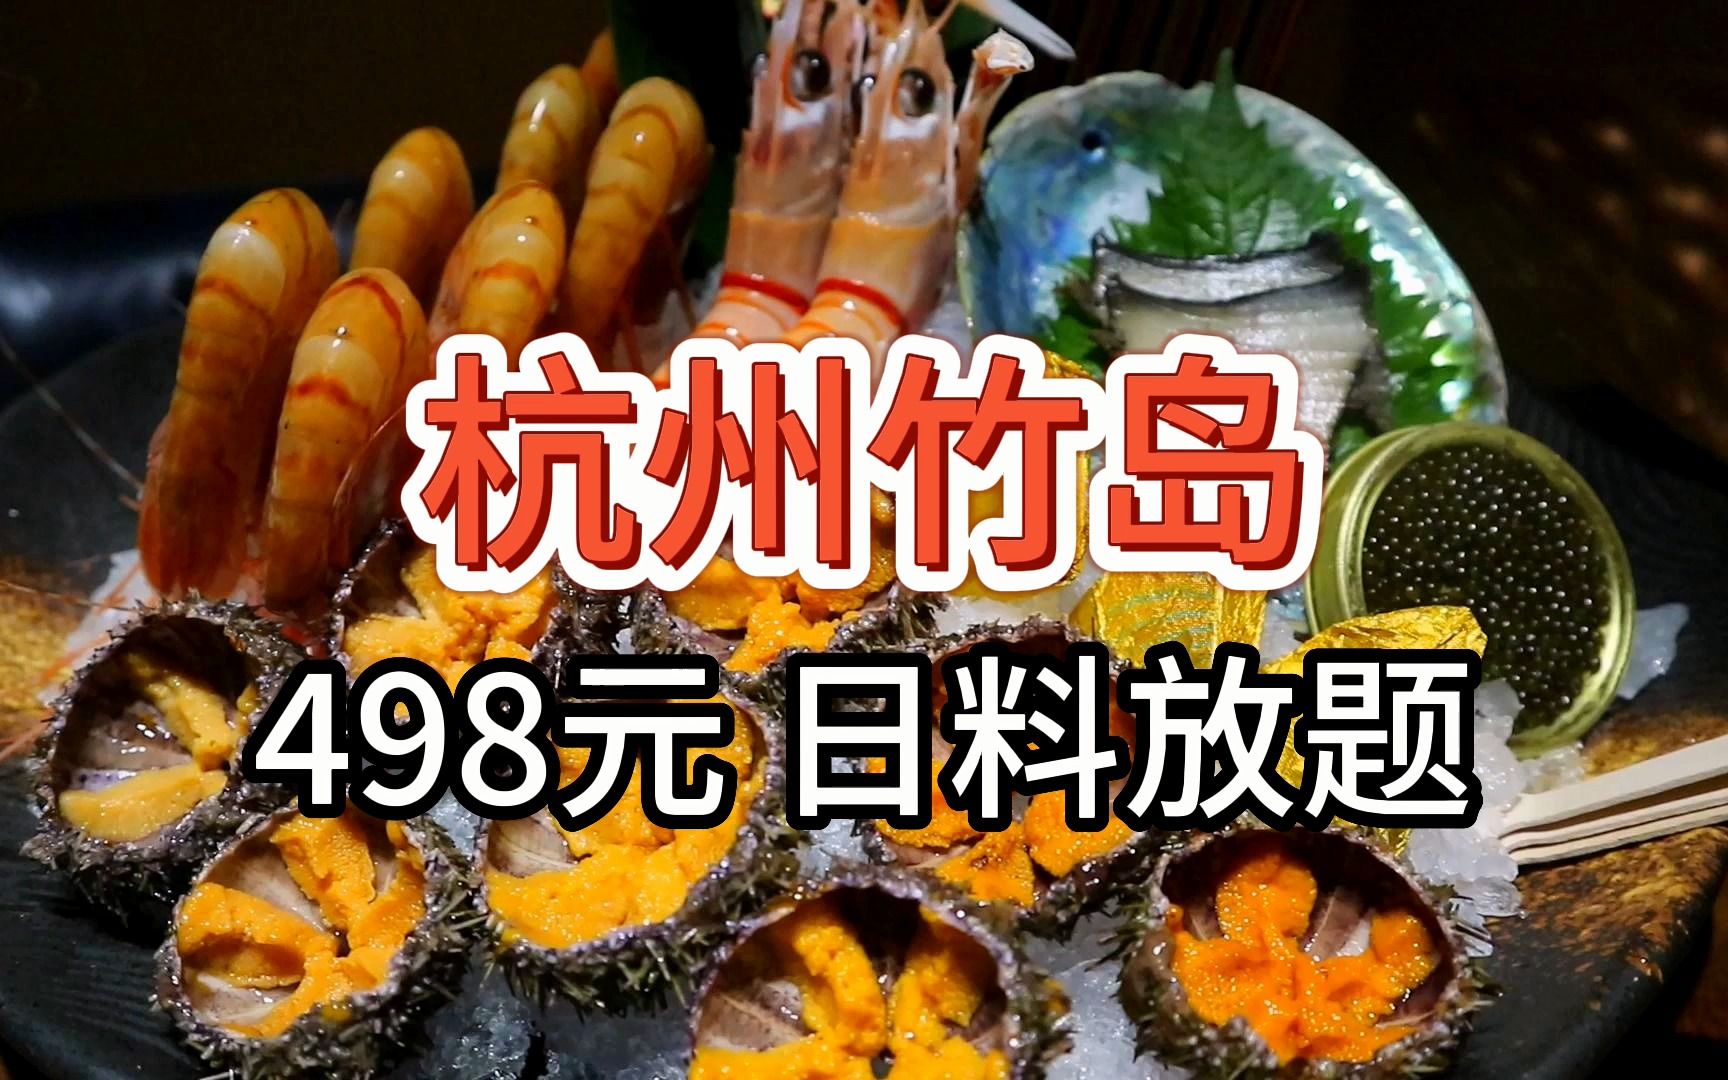 【杭州竹岛日料放题】498元 红魔虾牡丹虾畅吃